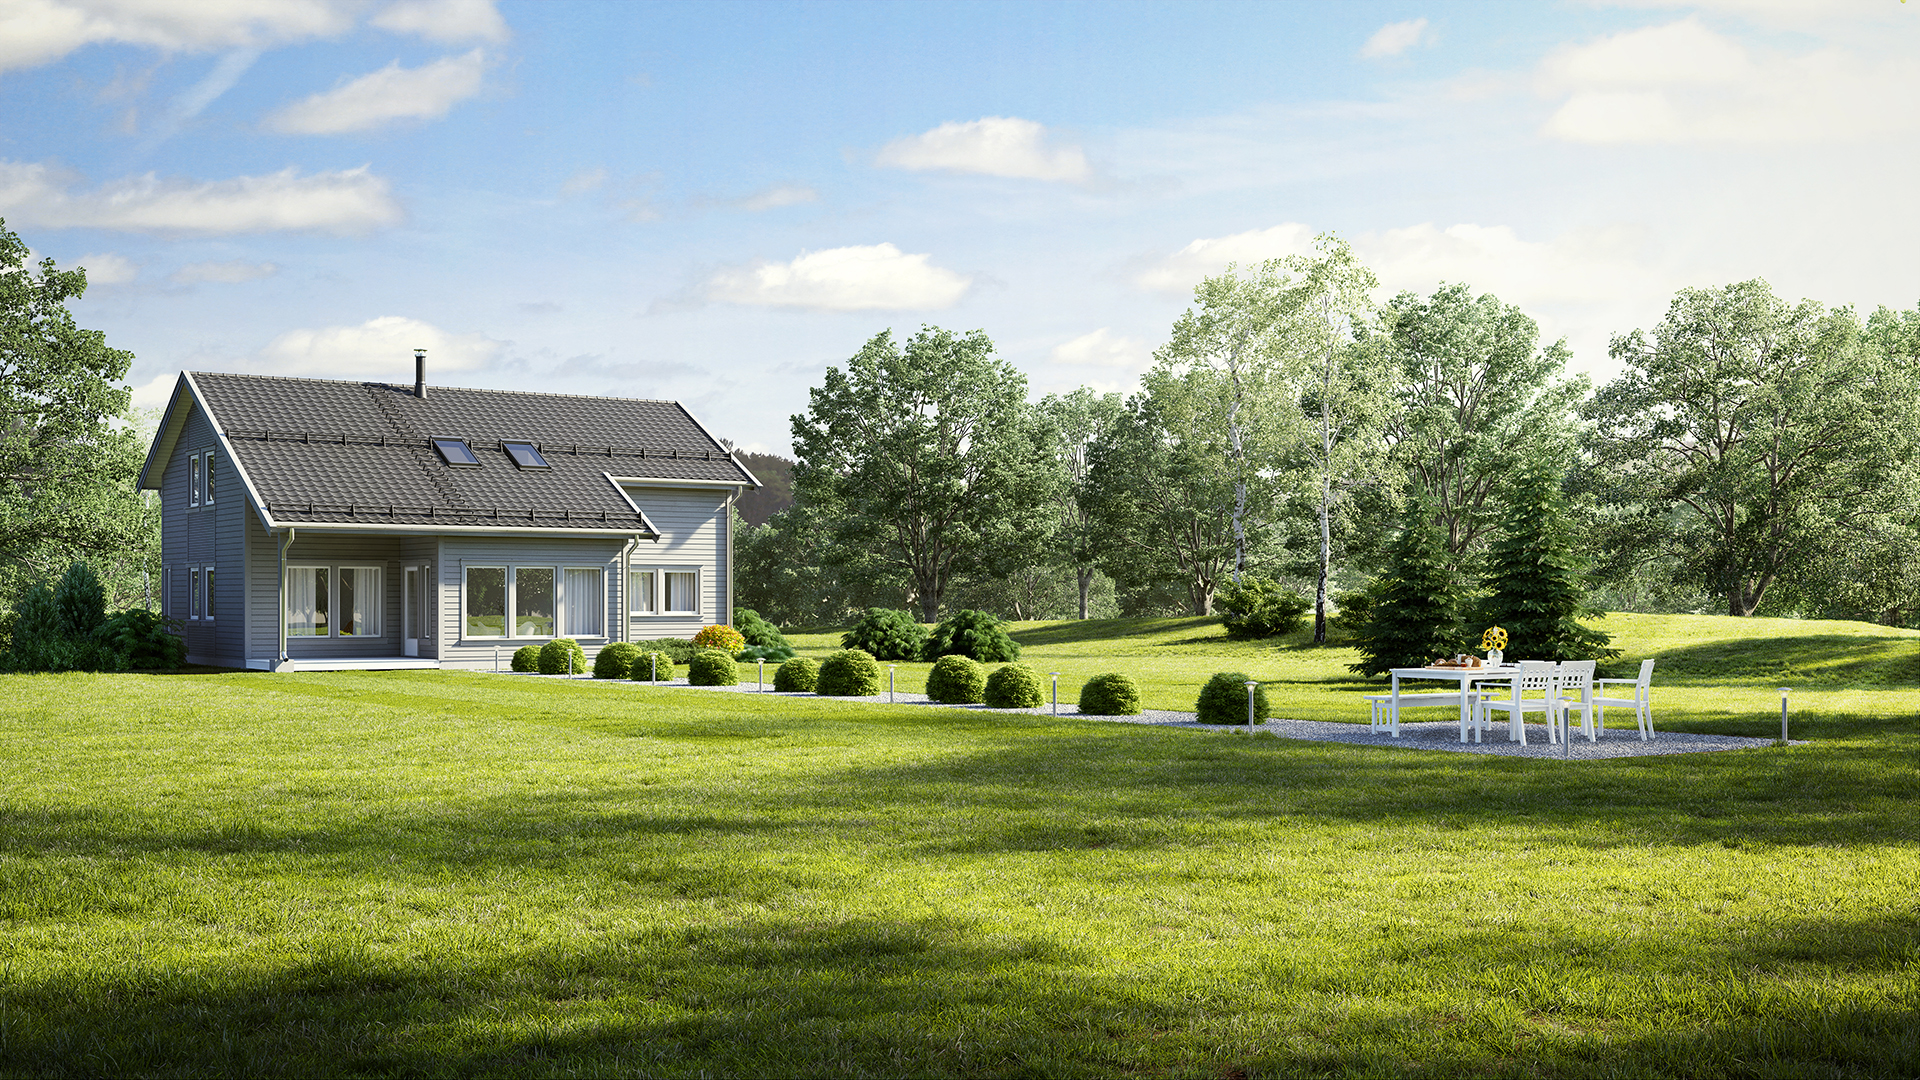 Et hus med 3D-bildevisning på en grønn plen, som viser frem dets moderne design og konkurransedyktige priser.